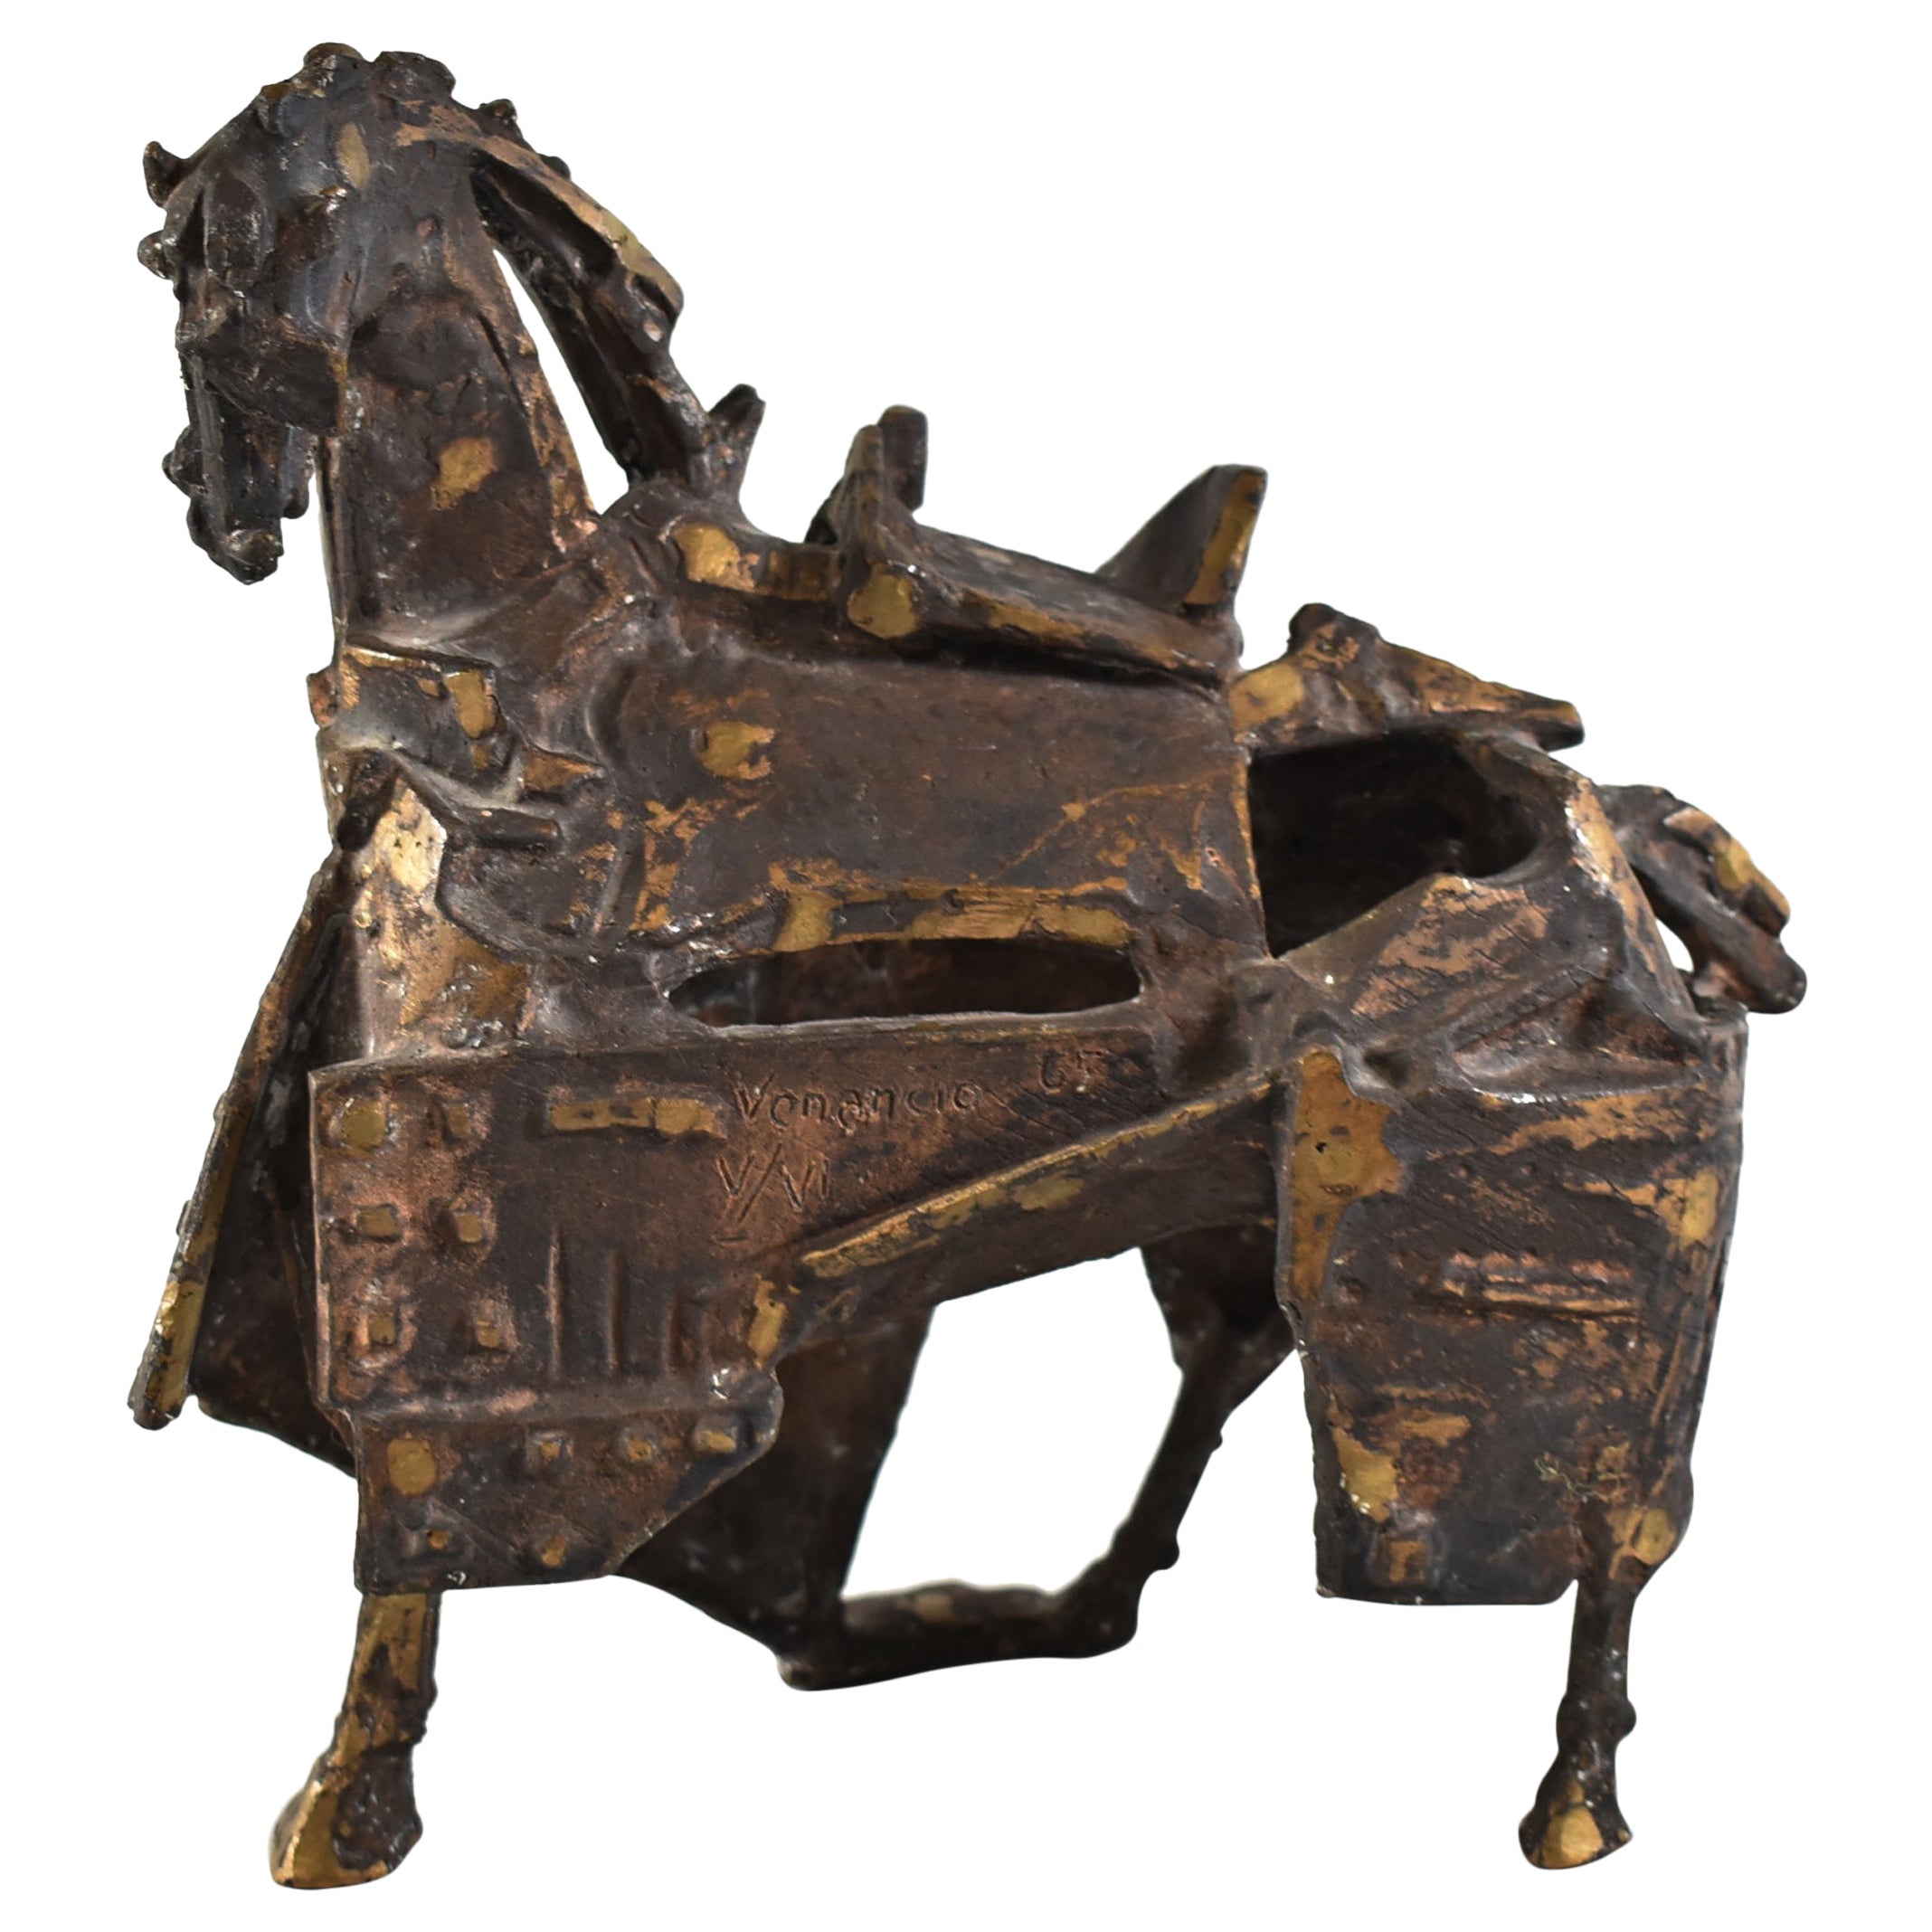 Brutalist Bronze Horse Sculpture by Venancio Blanco Spain, 1923-2018 For Sale